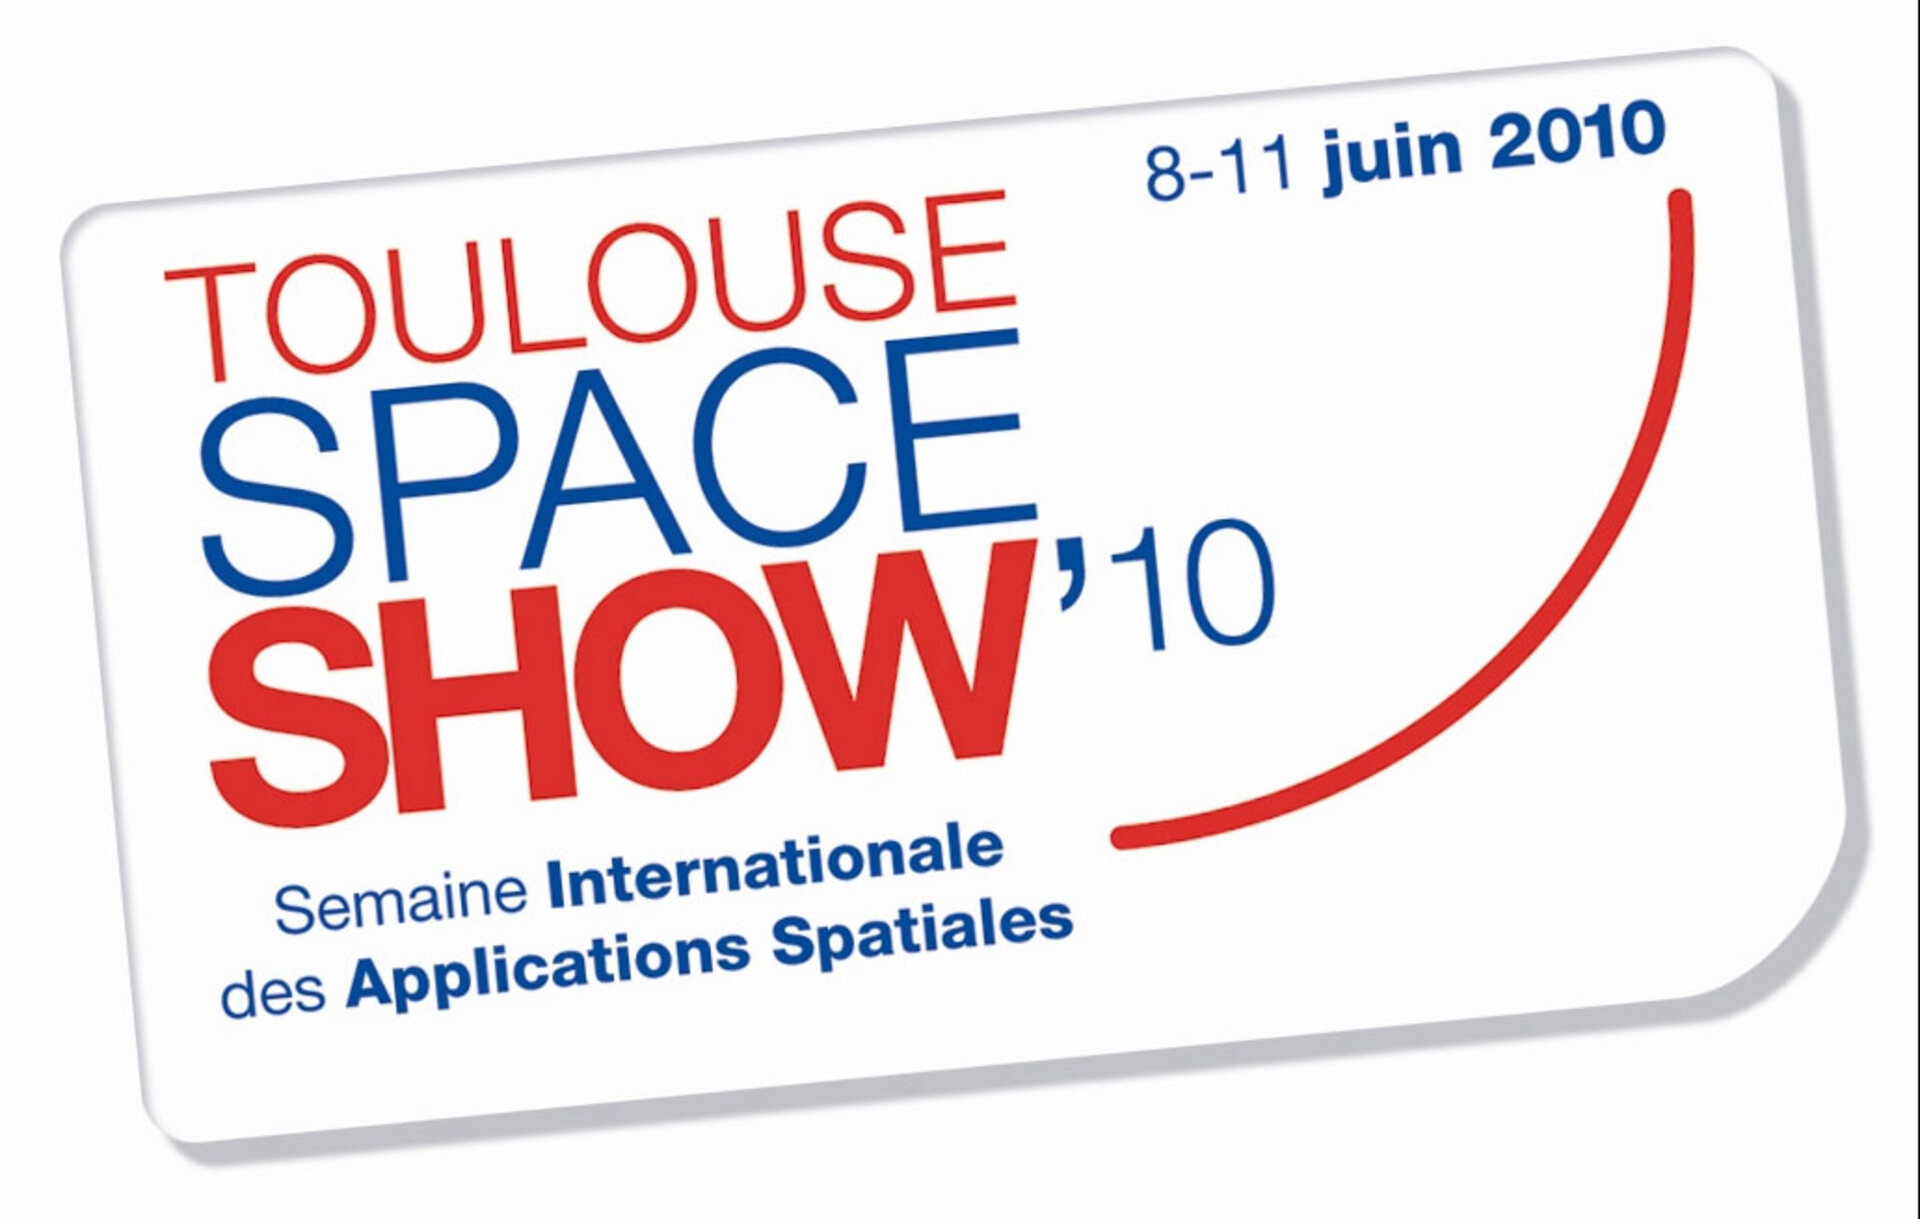 Le logo du Toulouse Space Show 2010